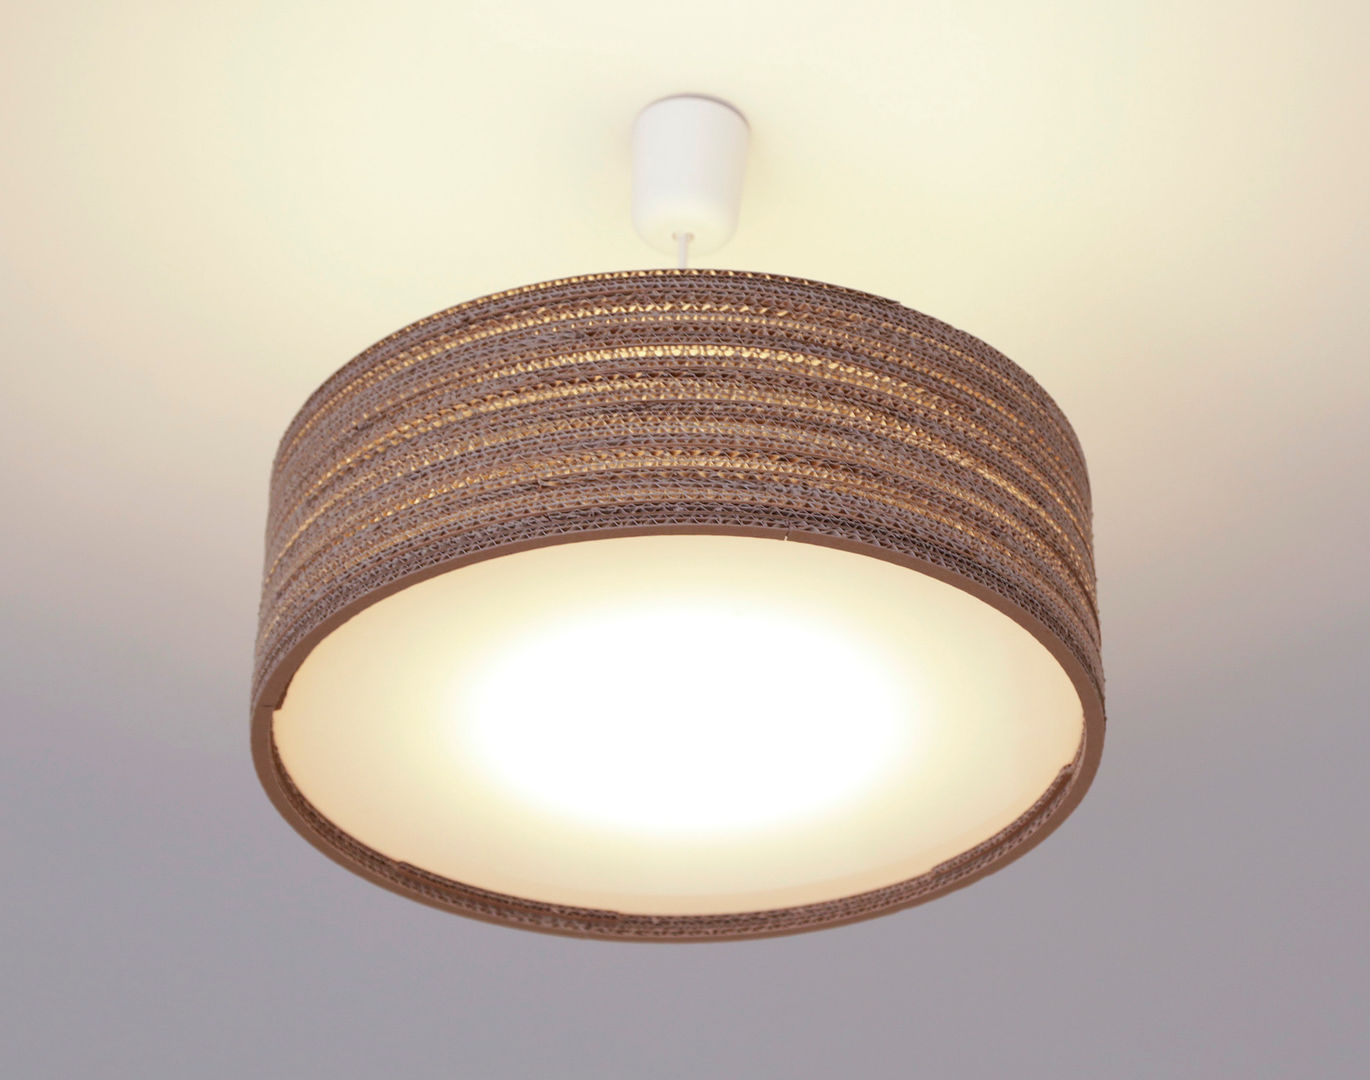 Wavelights - Lampen aus Wellpappe, packbar packbar Living room کاغذ Lighting